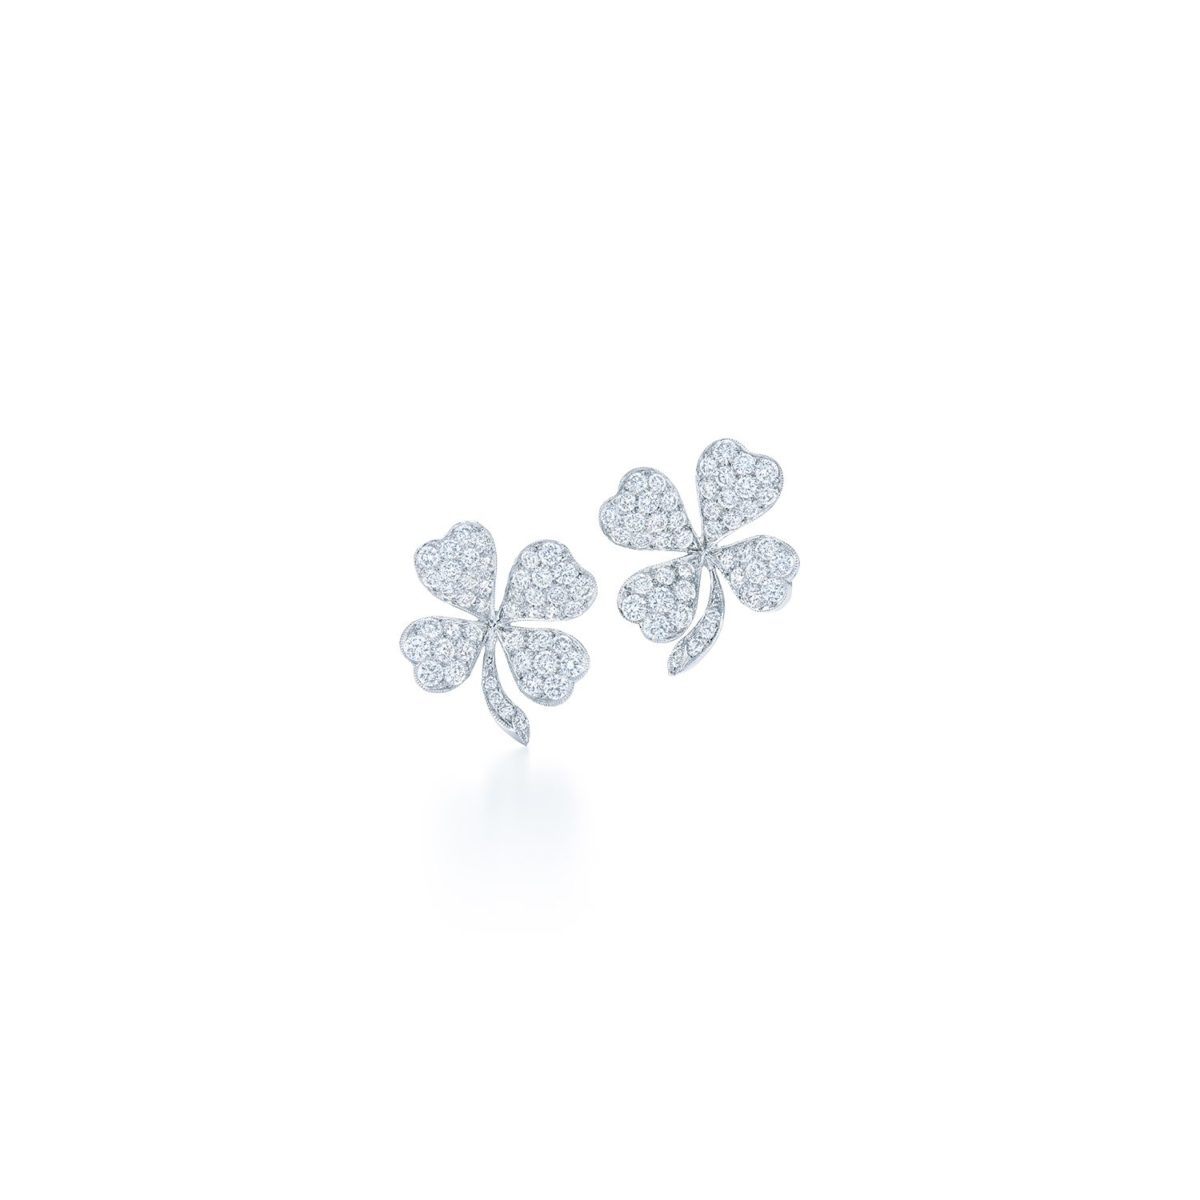 Kwiat Elements Diamond Earrings